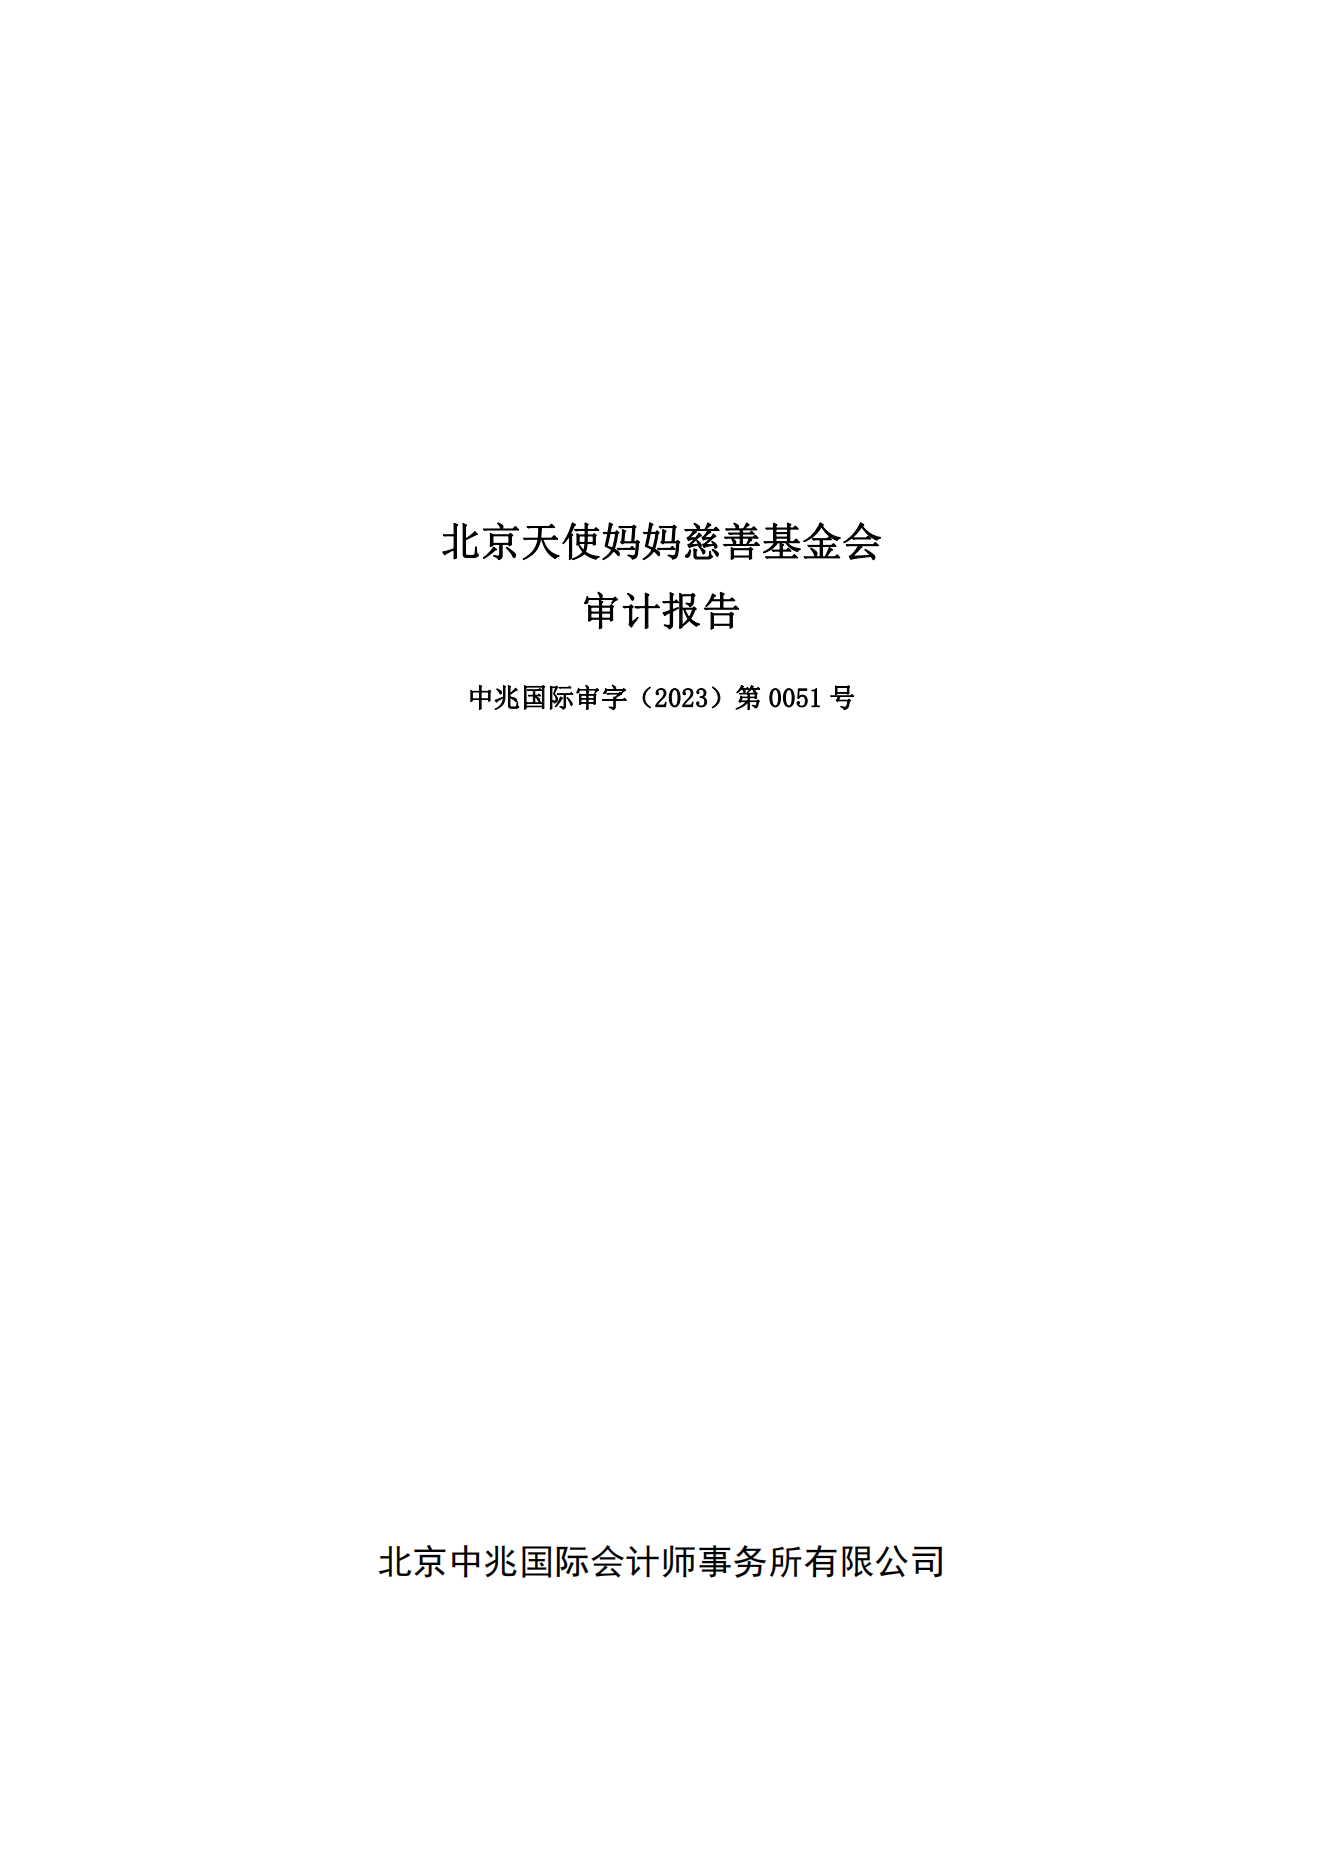 1、北京天使妈妈慈善基金会-2022年度年审报告-电子签章(1)_00.png